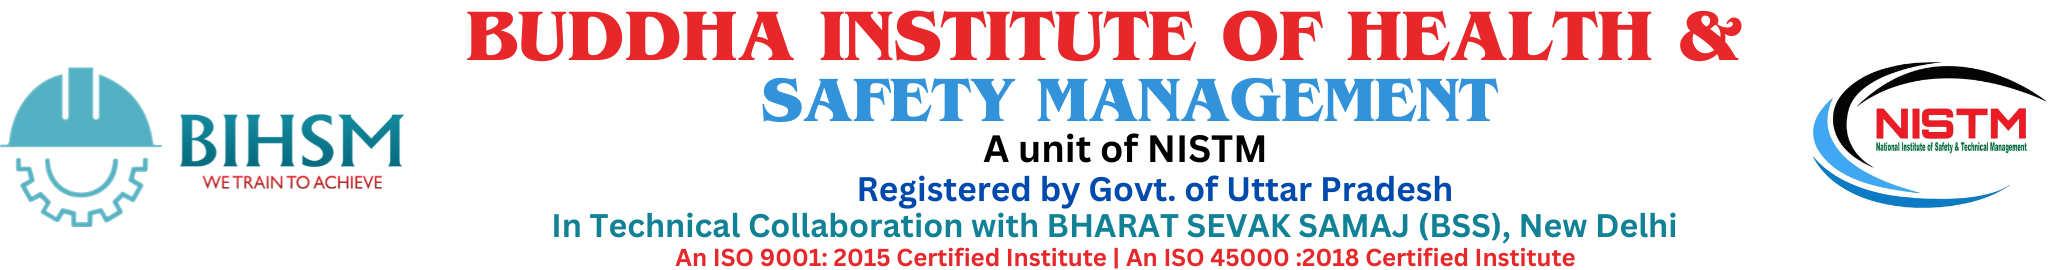 BIHSM - Buddha Institute Of Health & Safety Management Logo